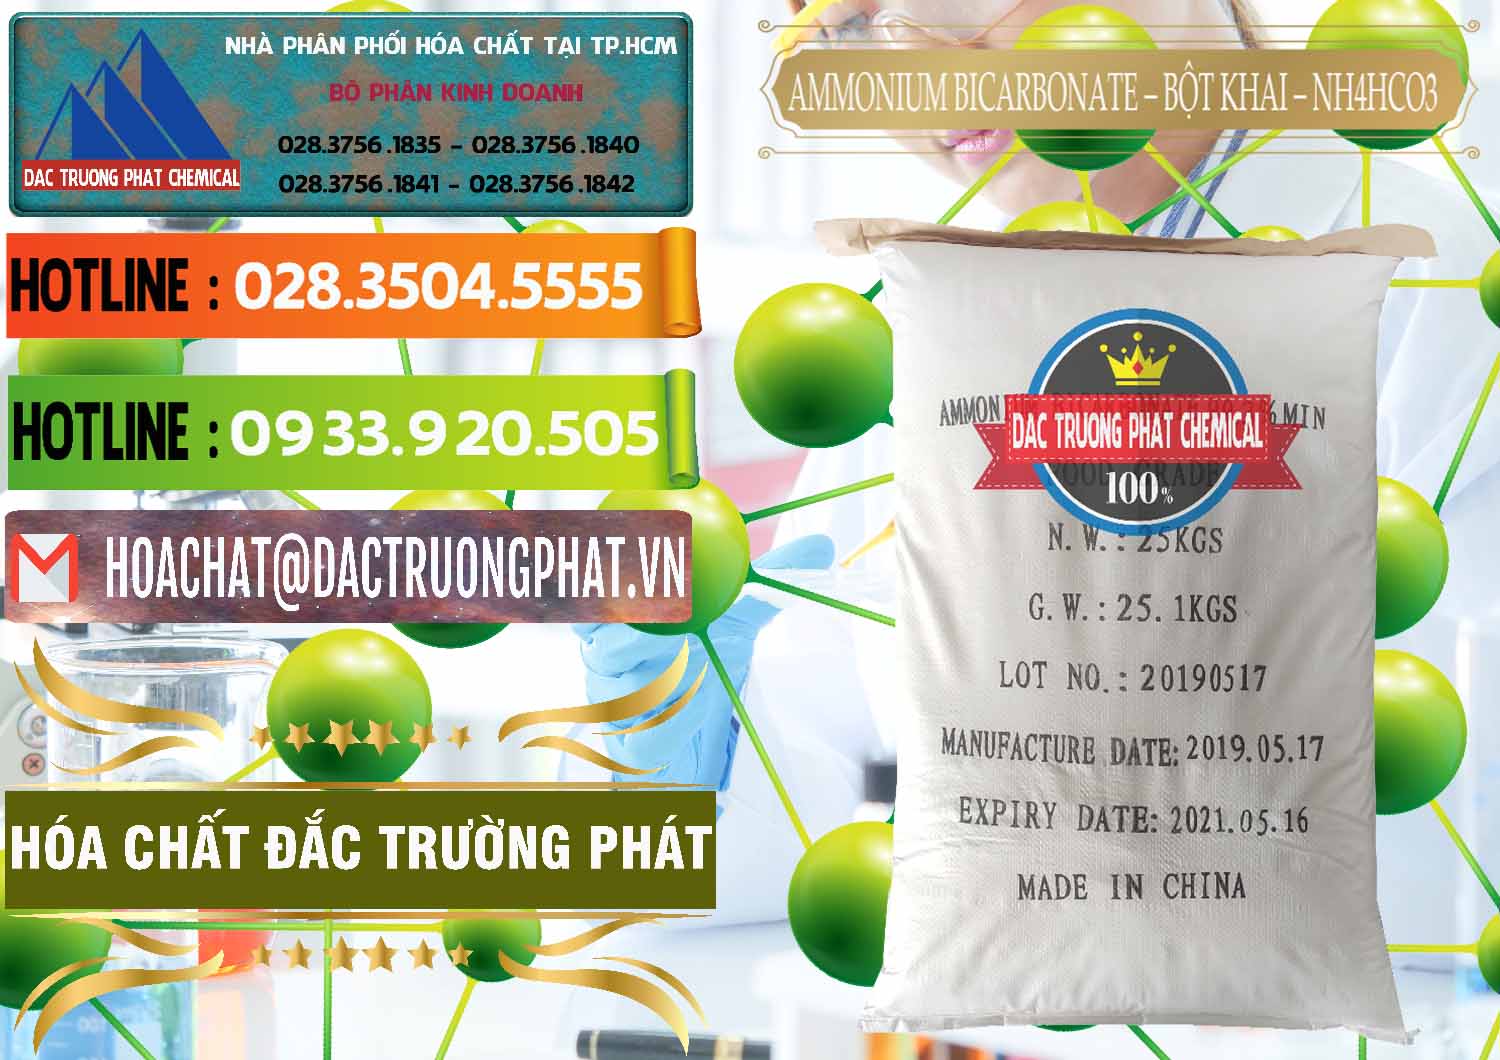 Nơi cung cấp _ bán Ammonium Bicarbonate - Bột Khai Food Grade Trung Quốc China - 0018 - Chuyên cung cấp & phân phối hóa chất tại TP.HCM - cungcaphoachat.com.vn